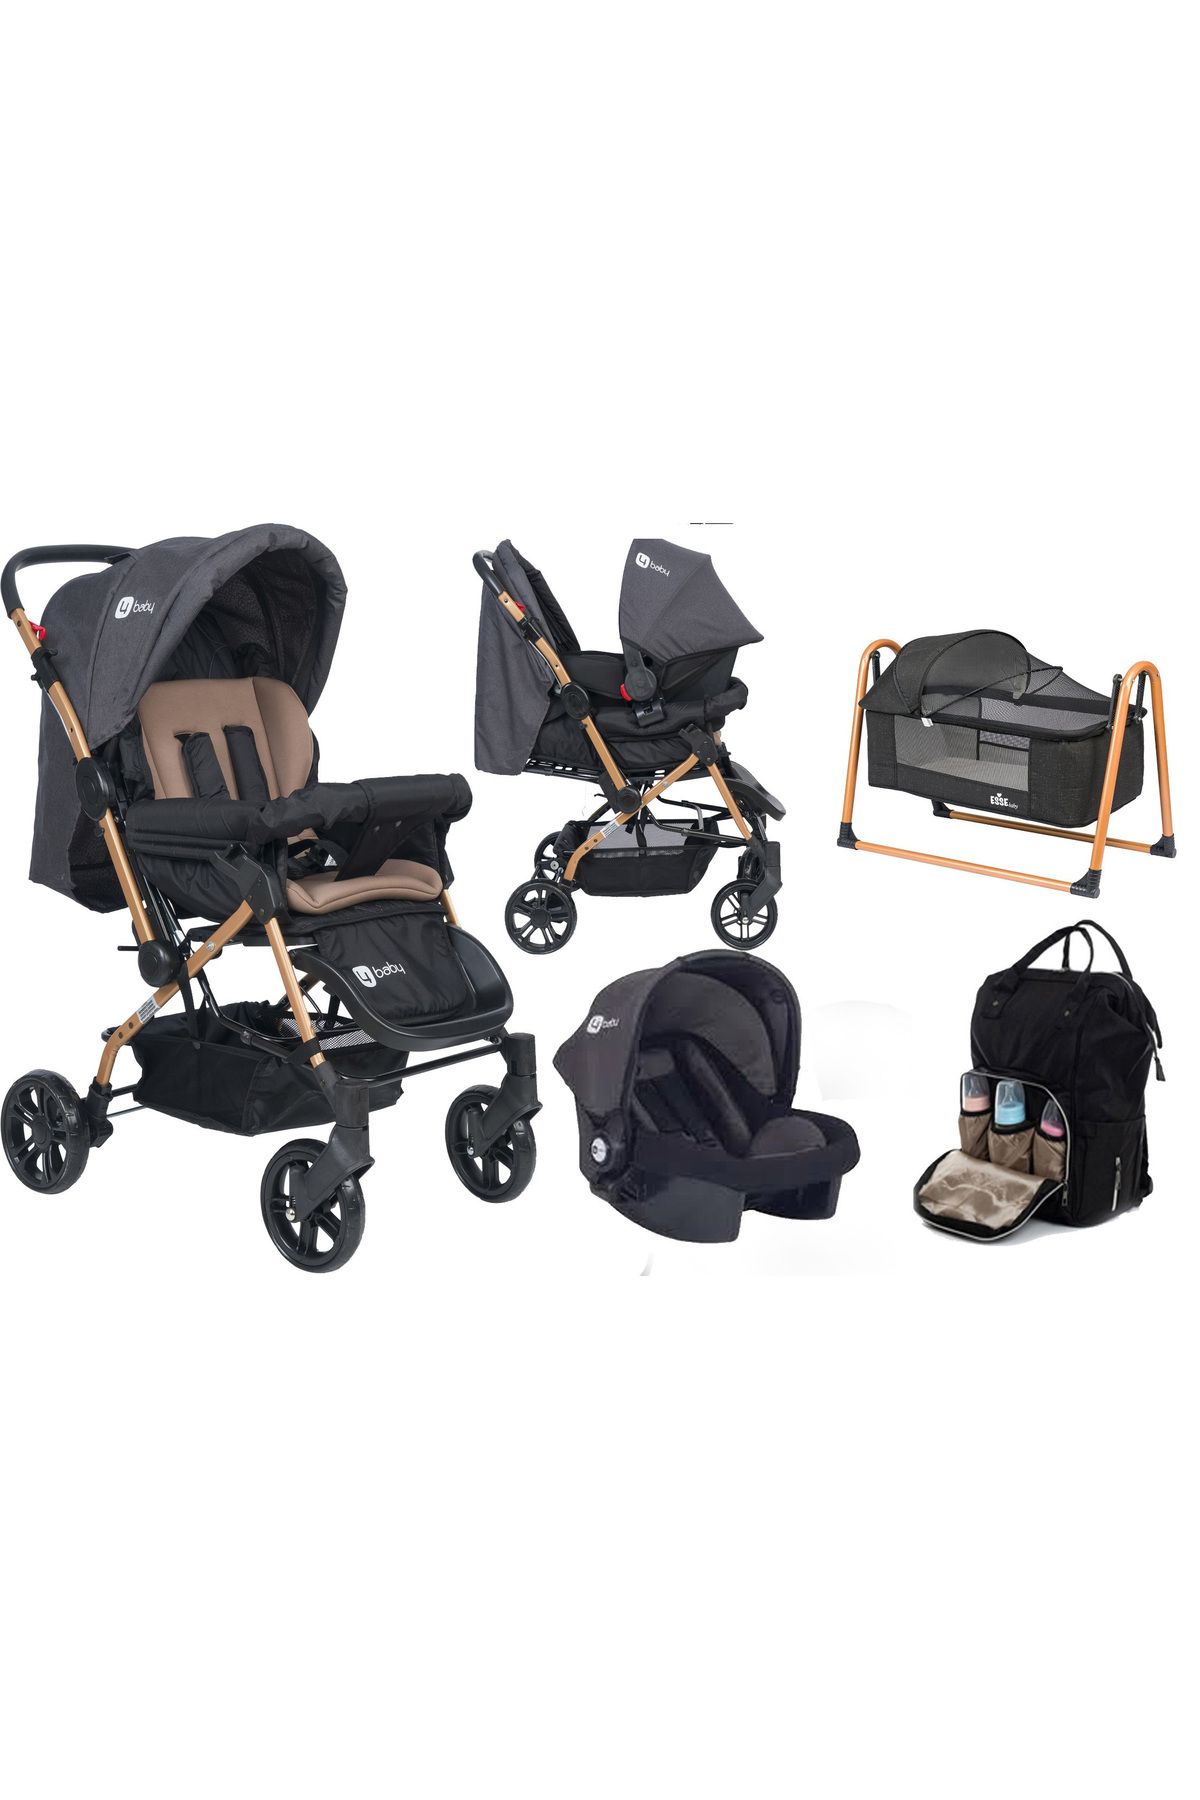 4 Baby Olympus çift yönlü bebek arabası puset çanta beşik fırsat seti antrasit